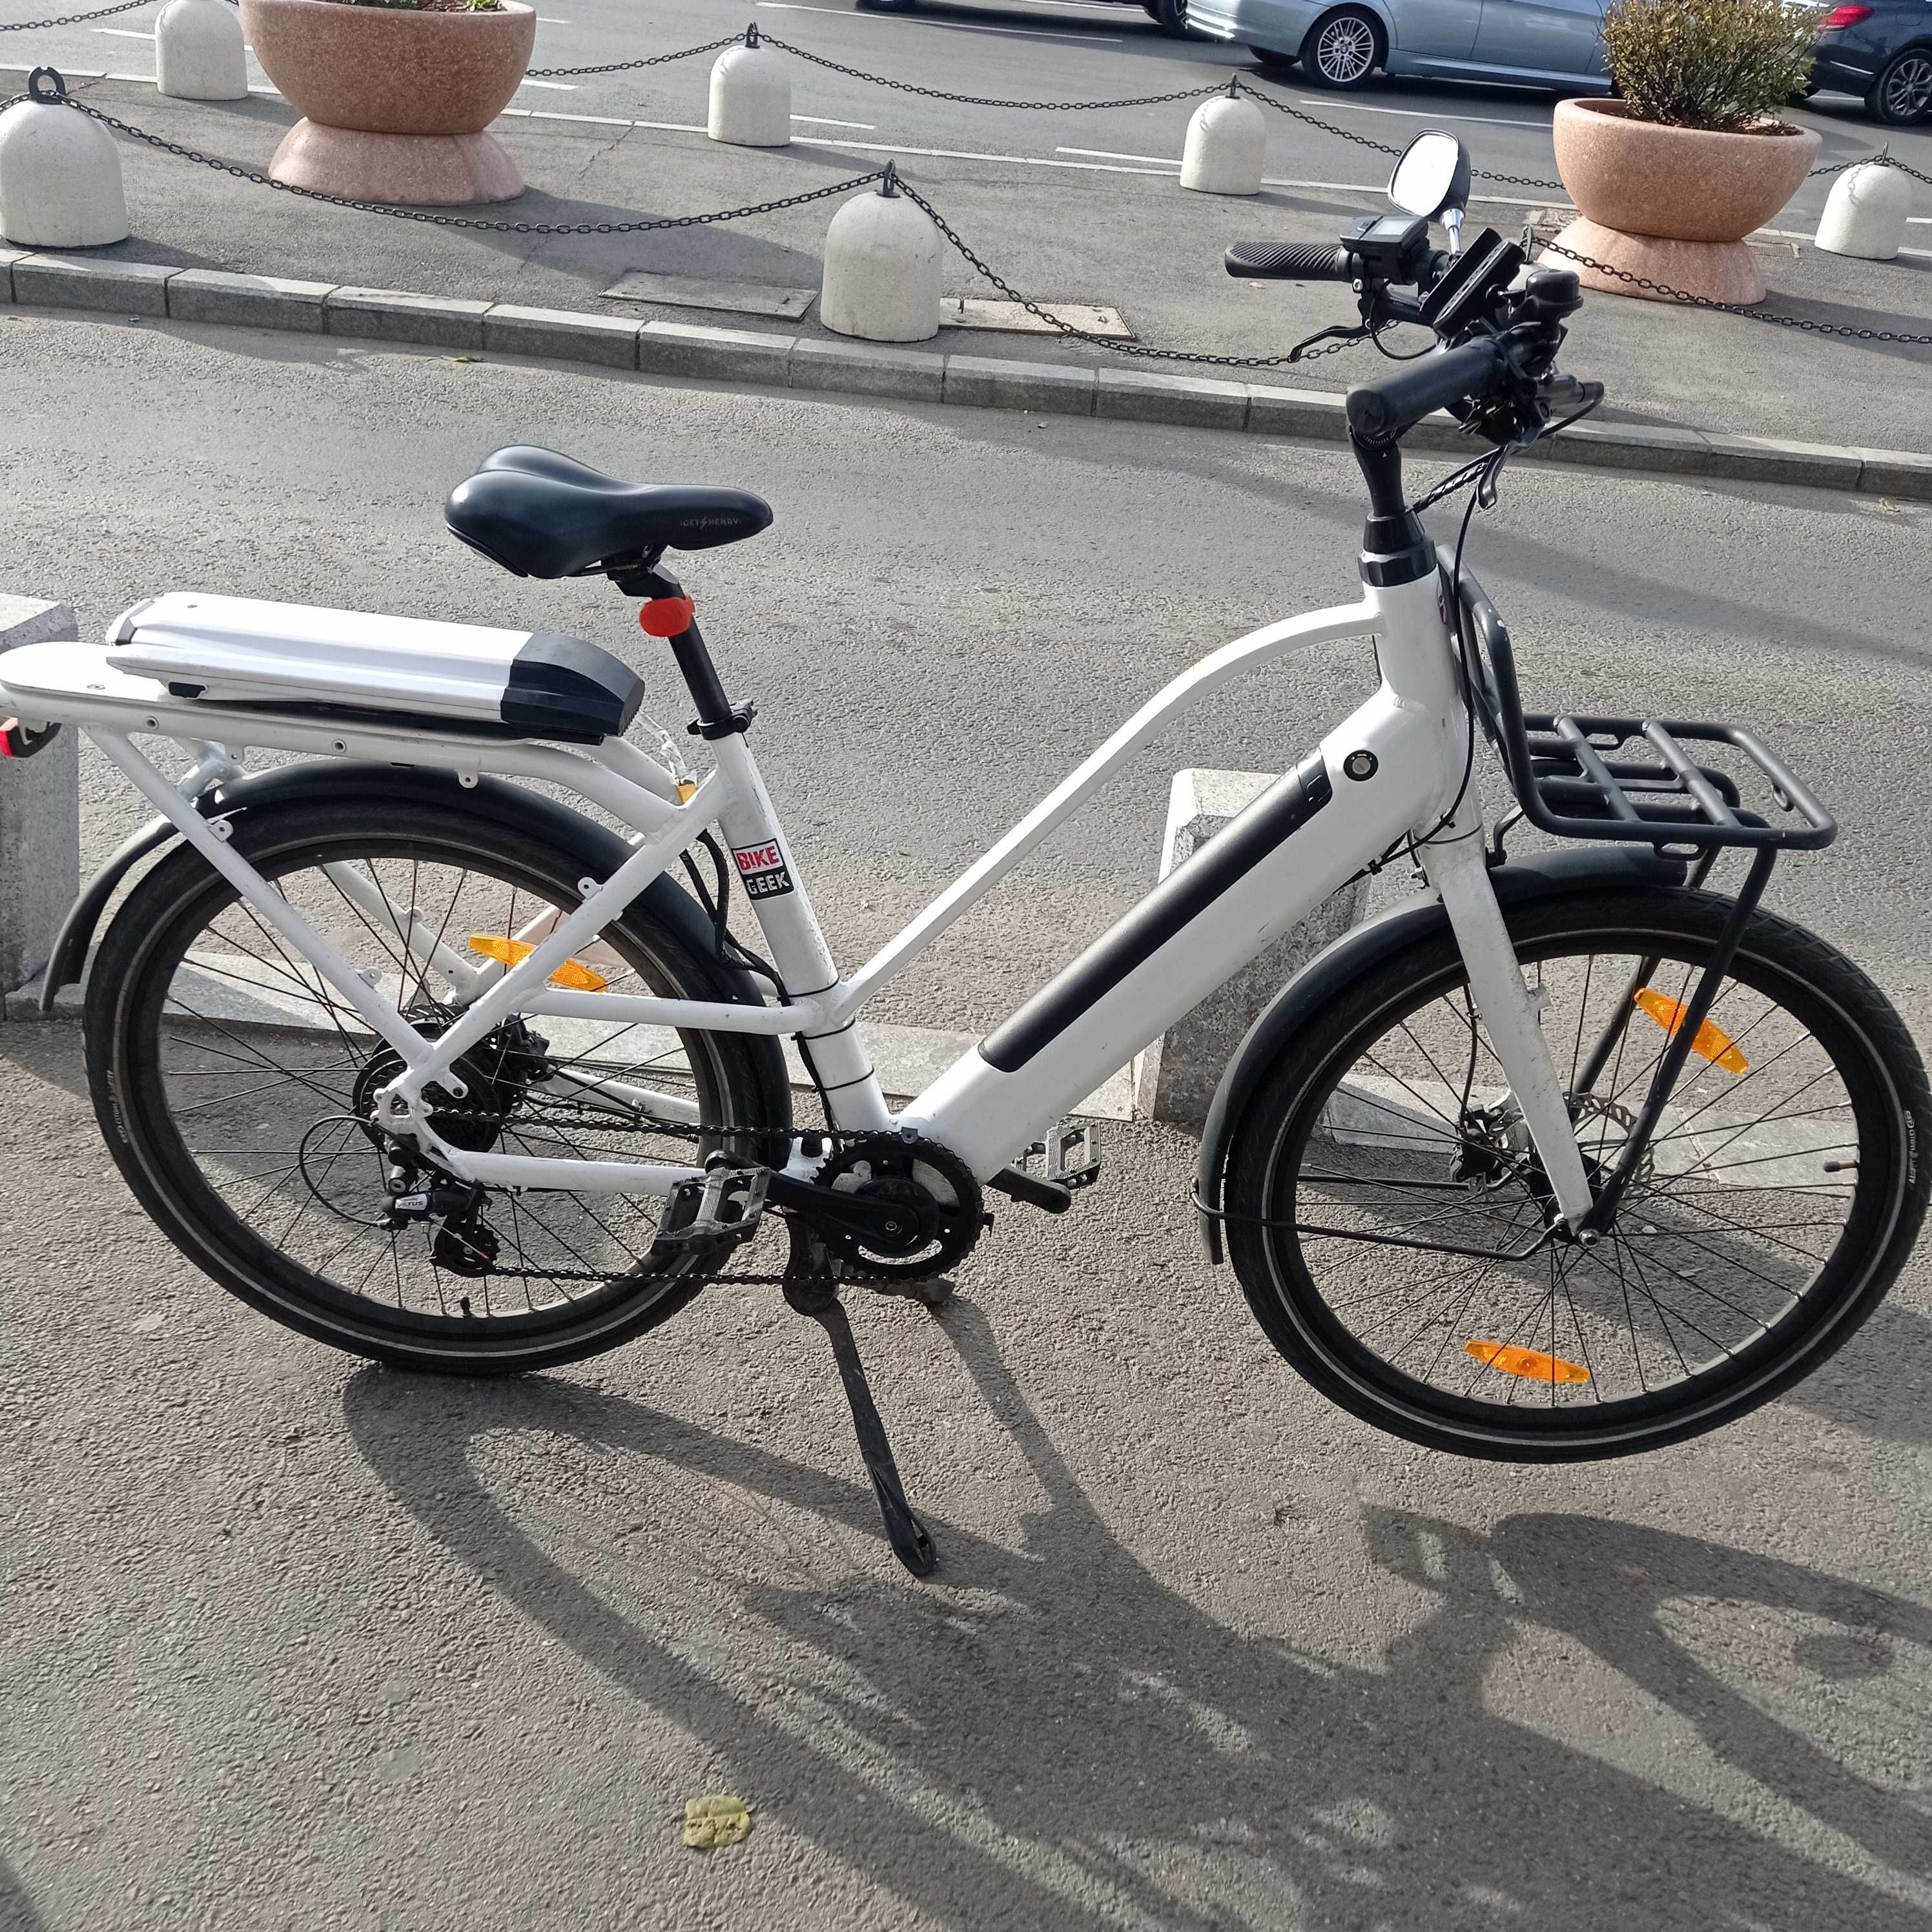 Bicicletă electrica,2 baterii 36V(100km),pentru curierat sau plimbări.